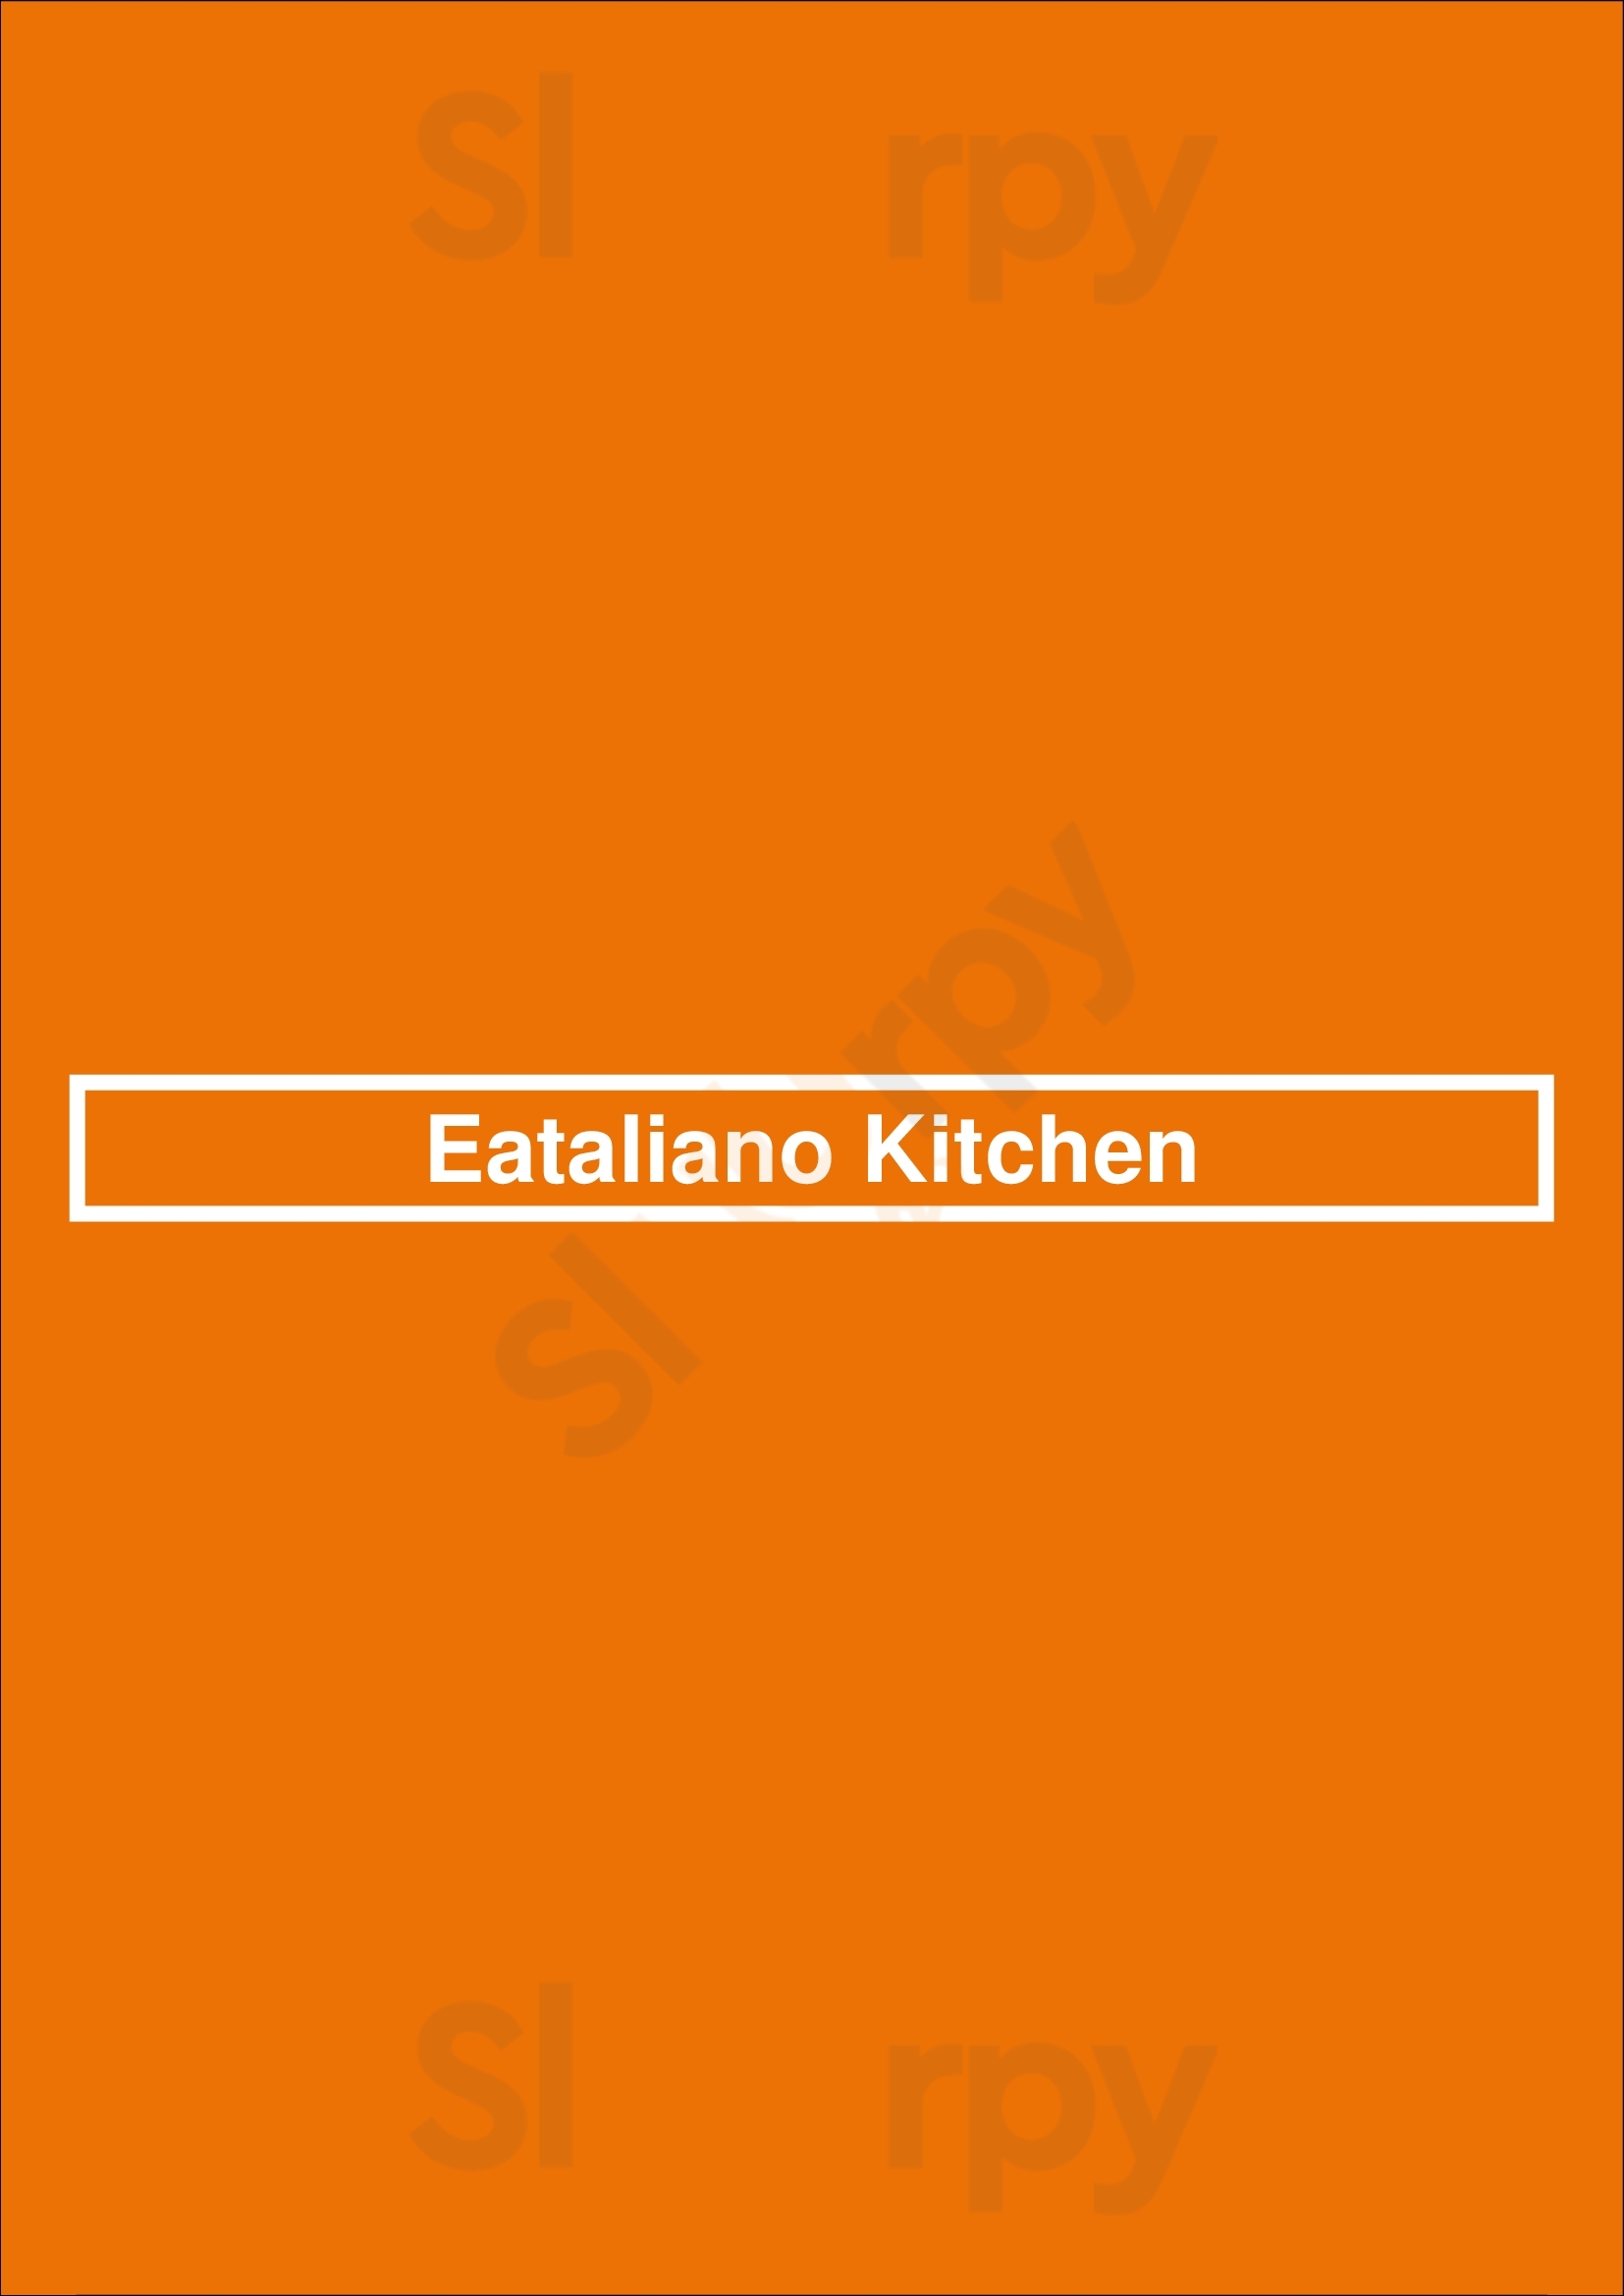 Eataliano Kitchen Atlanta Menu - 1